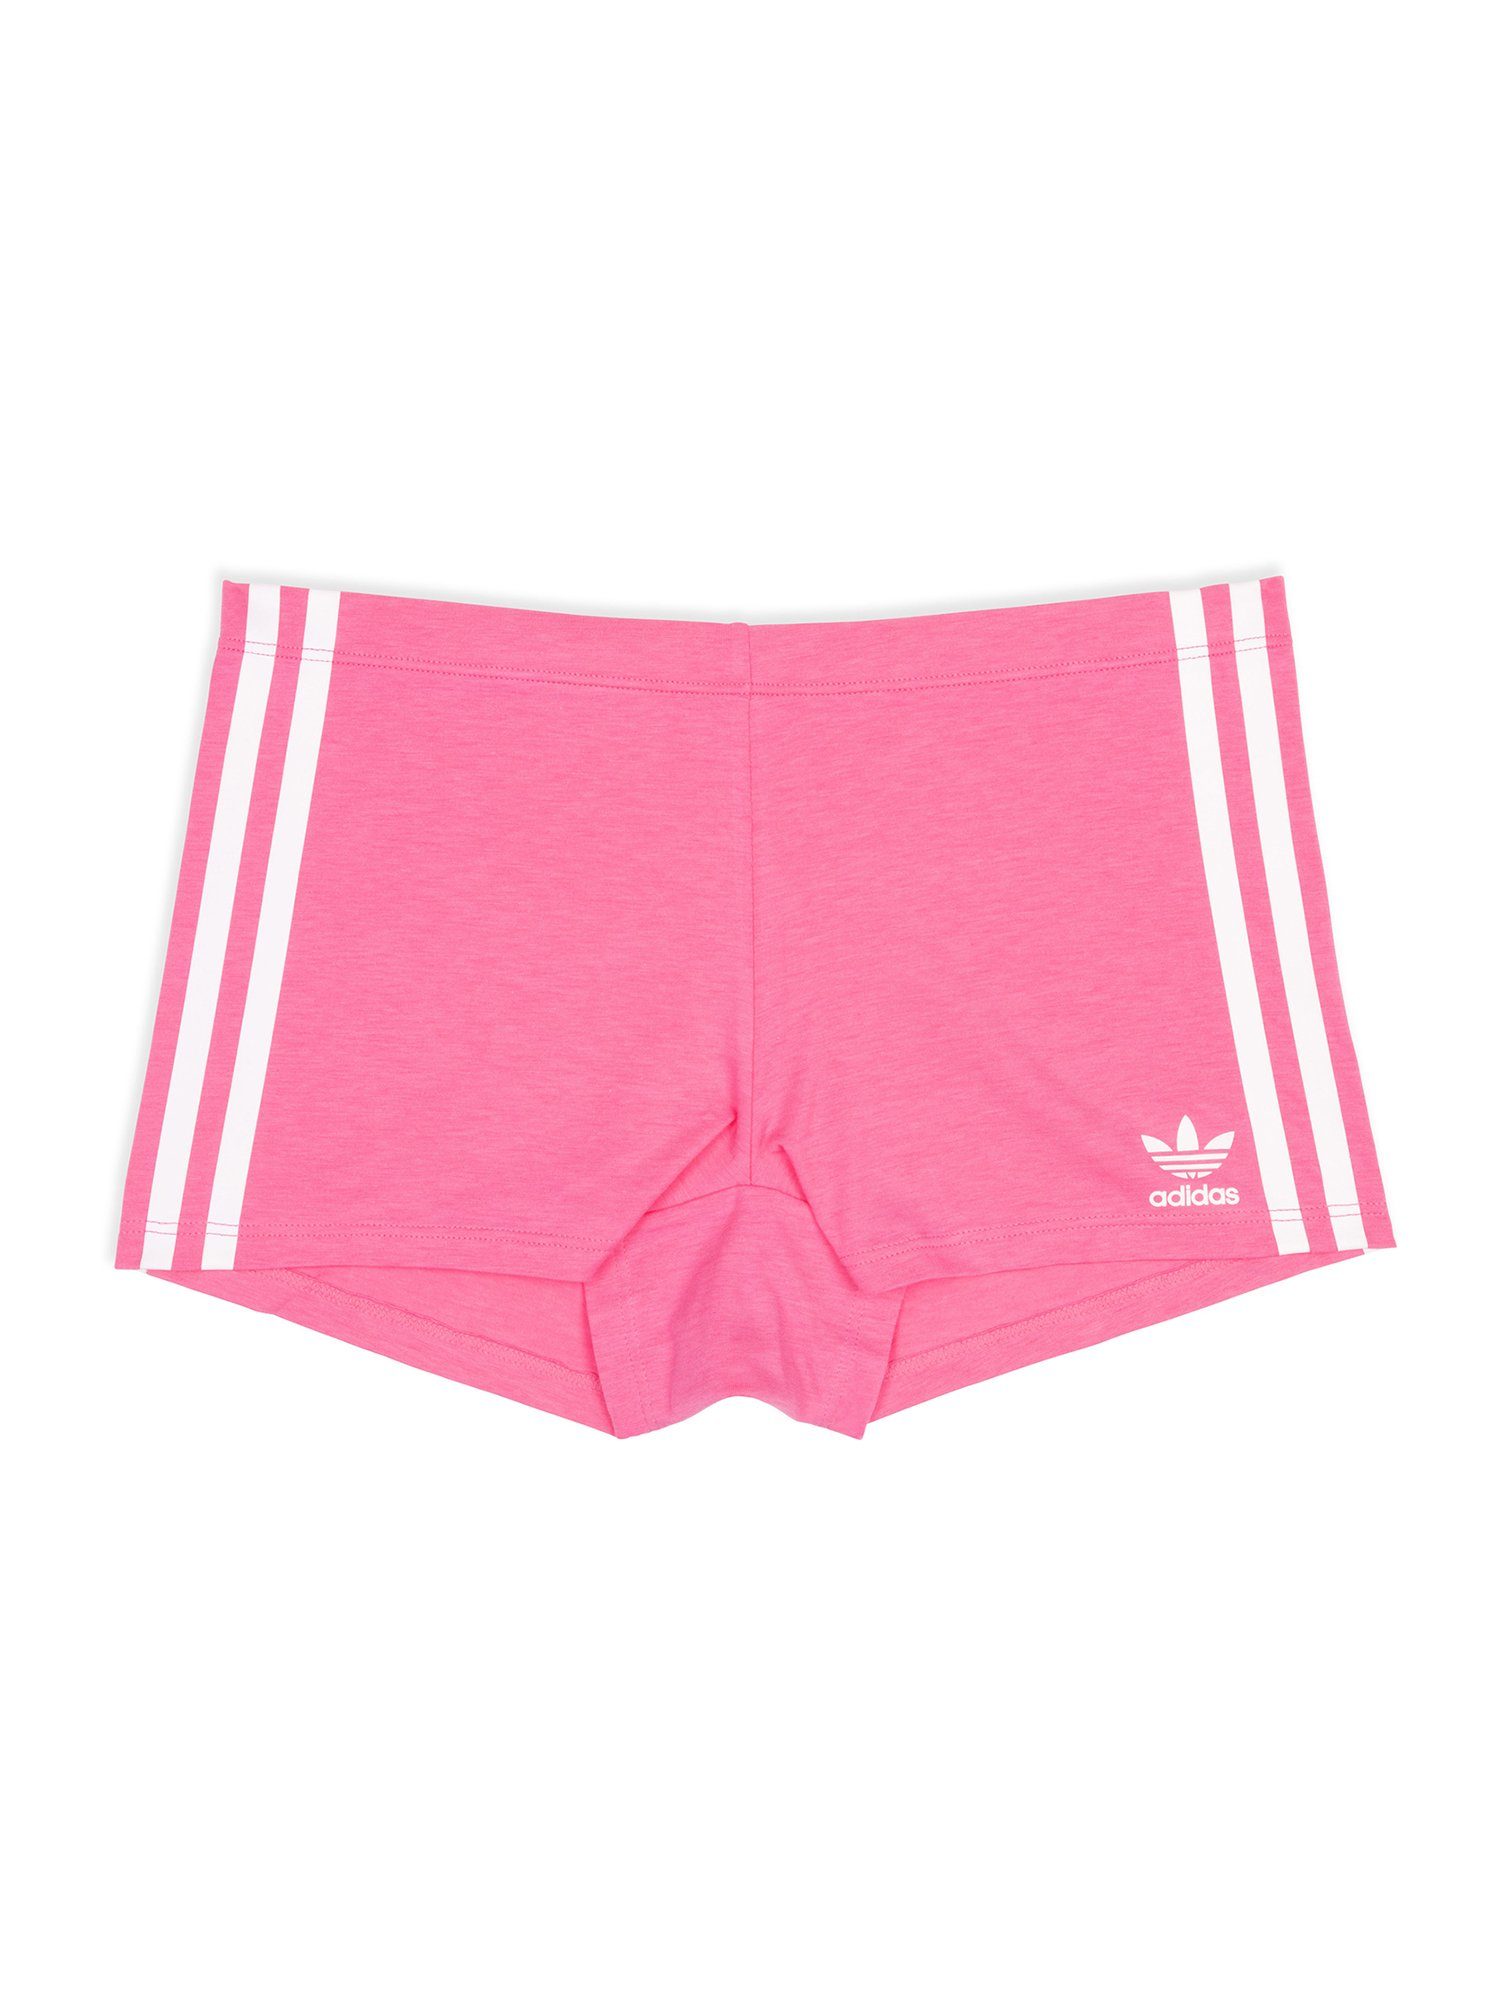 Originals Boxer unterwäsche Biker boxershort unterhose adidas lucid Short pink